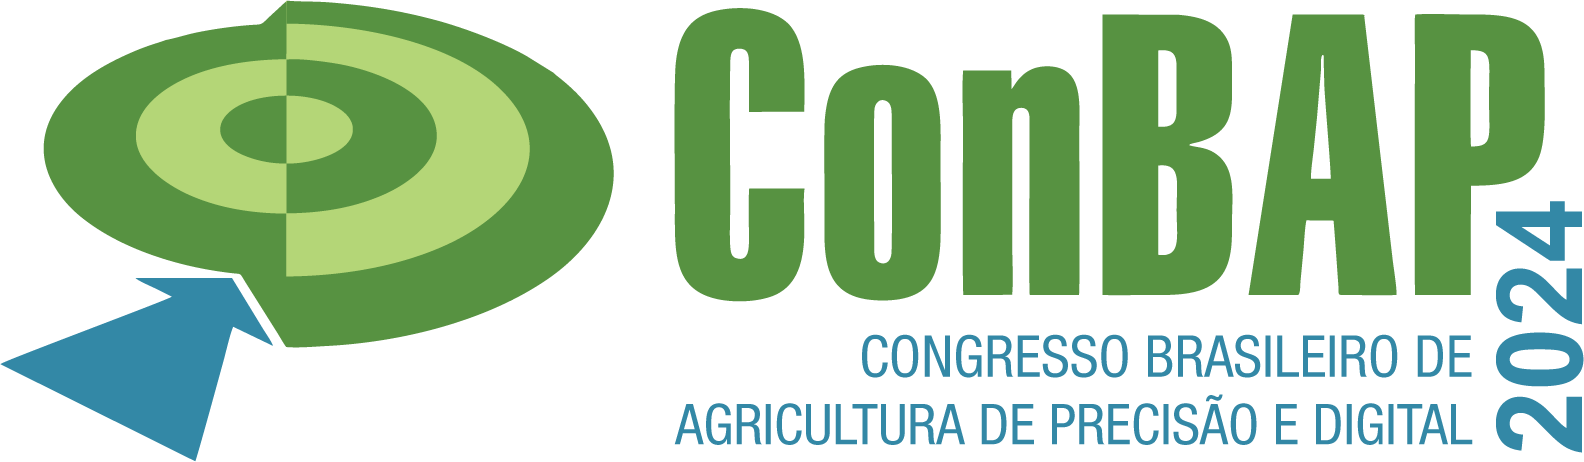 Congresso Brasileiro de Agricultura de Precisão e Digital (ConBAP)